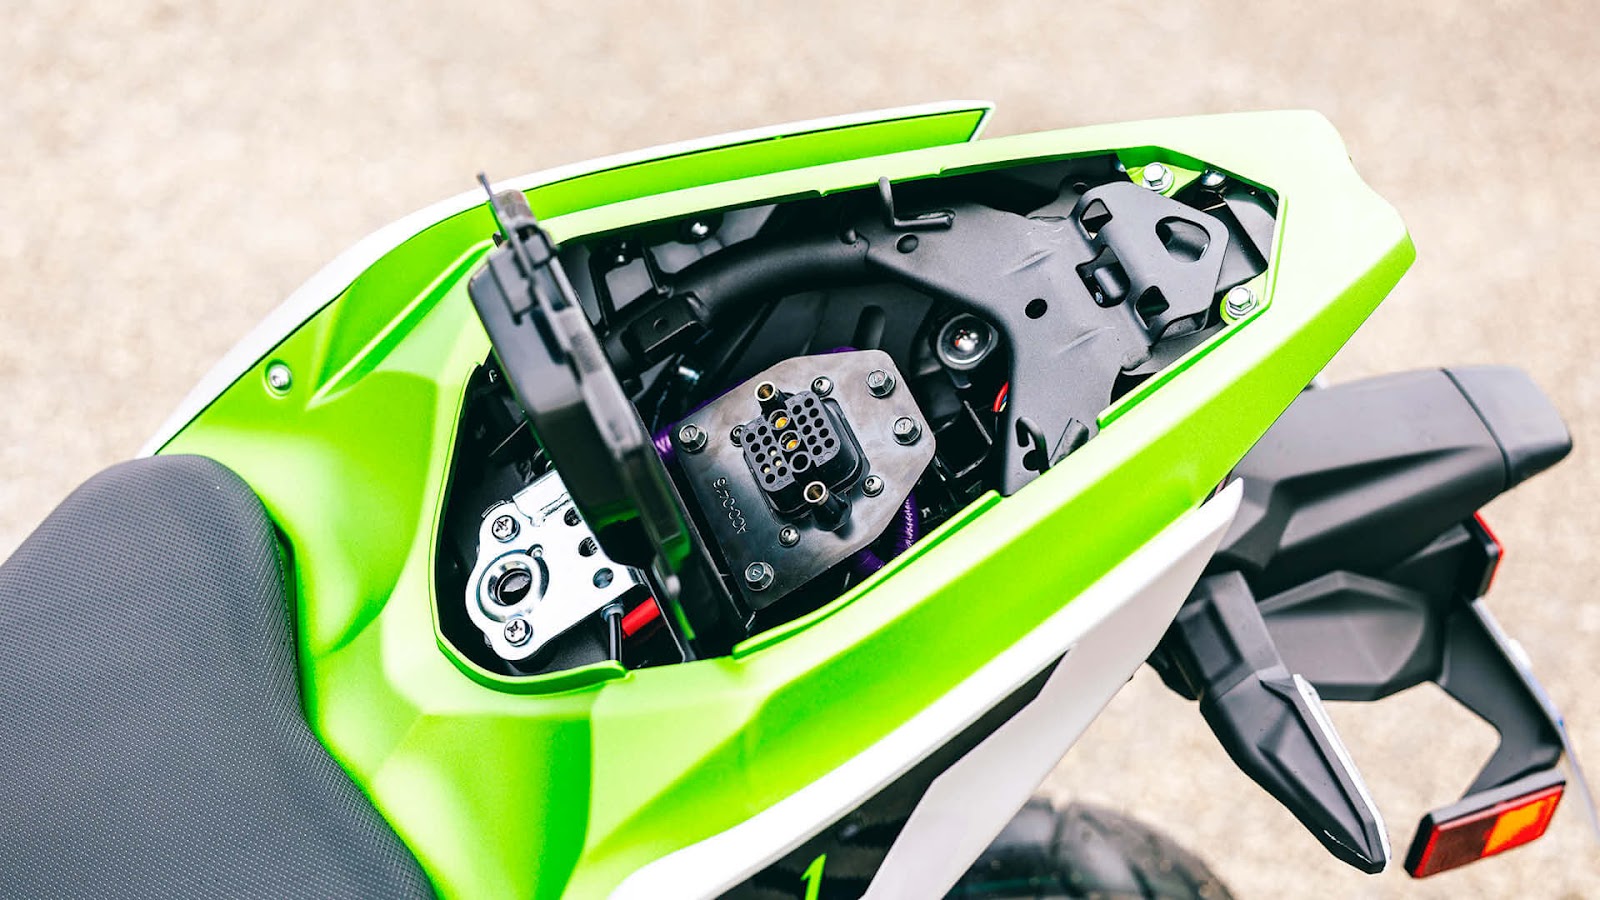 Si nous voulons charger les batteries directement sur la moto, c'est ici que nous devons brancher le chargeur.